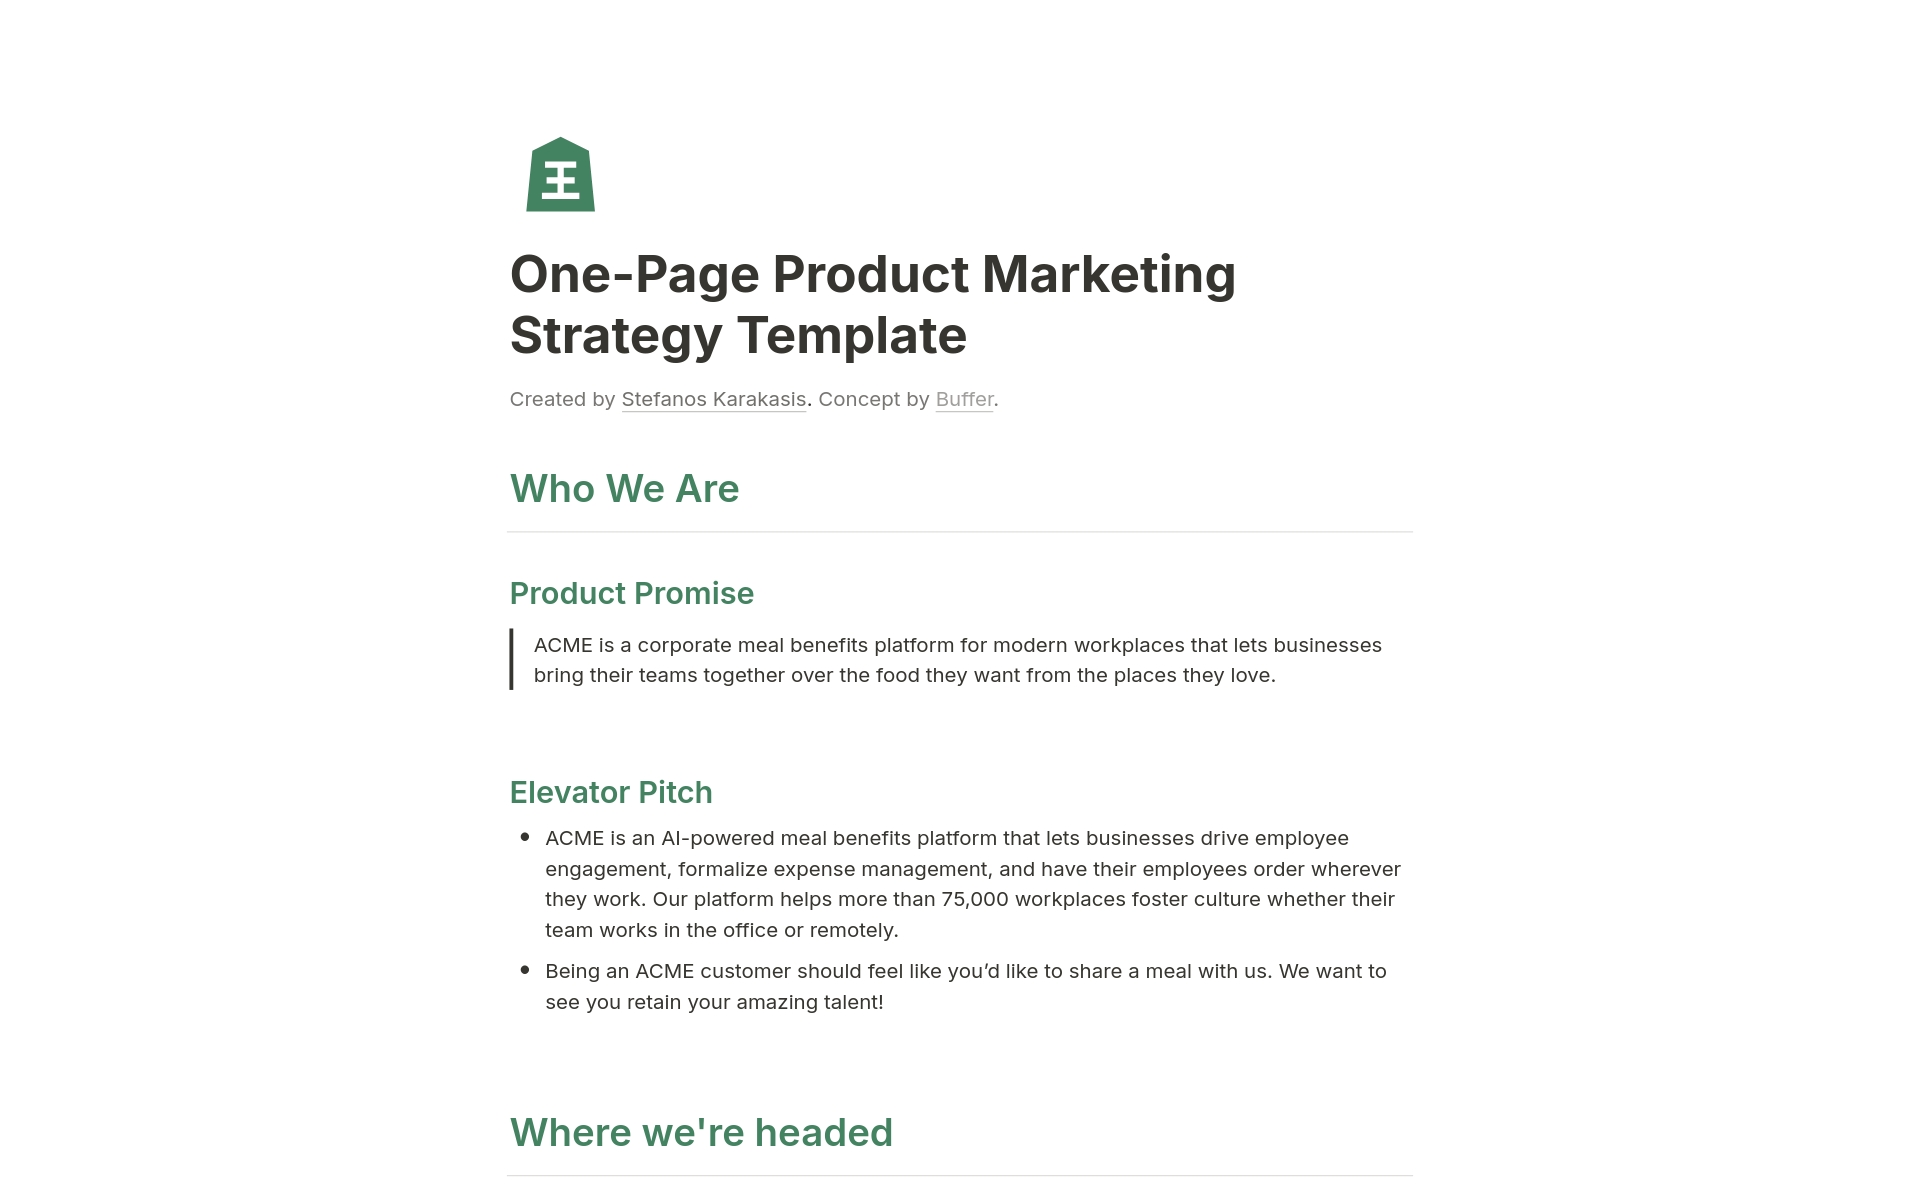 Vista previa de plantilla para One-Page Product Marketing Strategy